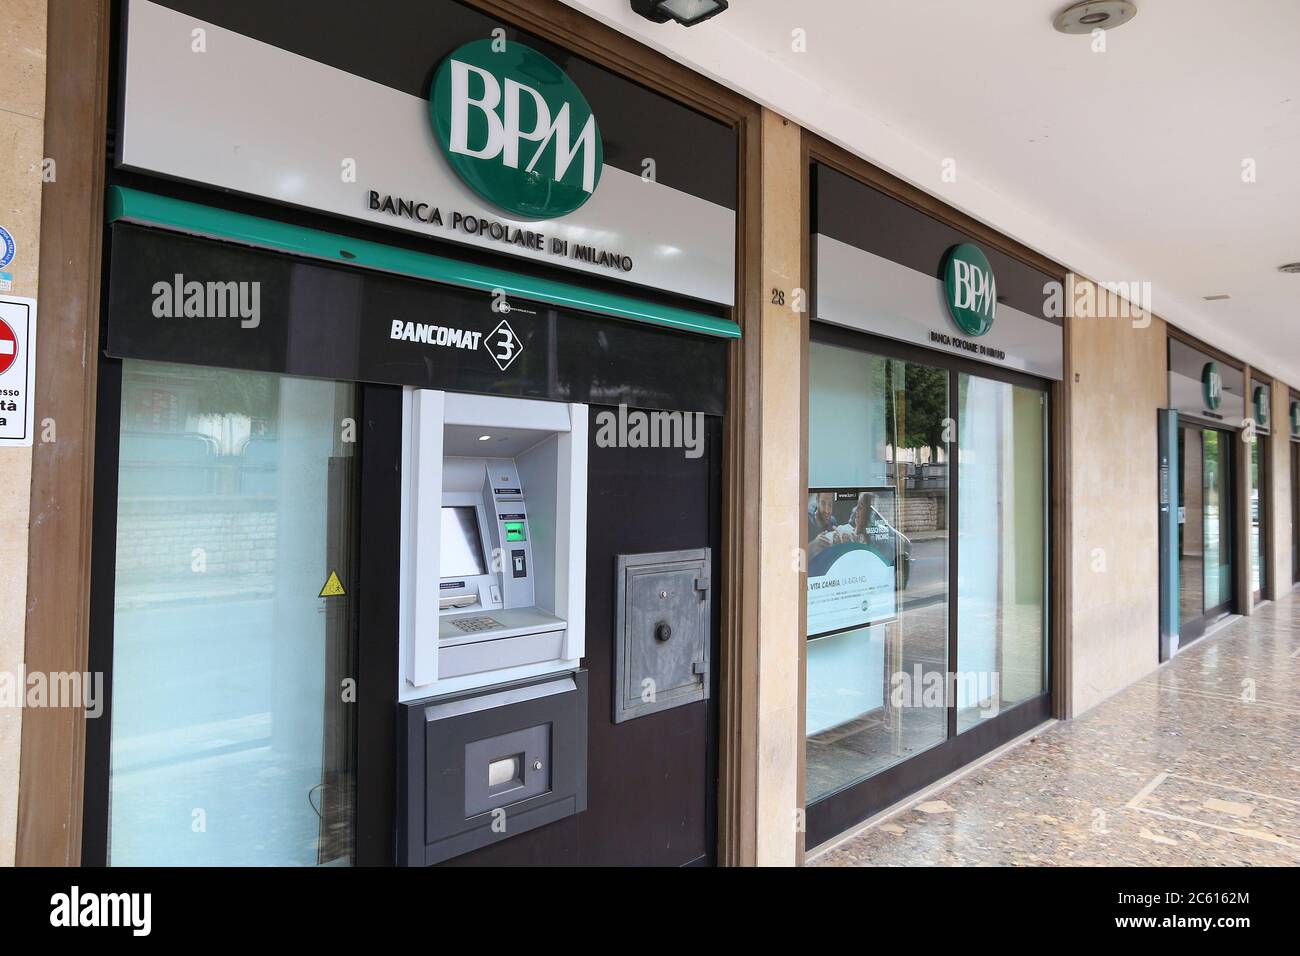 Banca Popolare Di Milano Immagini E Fotos Stock Alamy